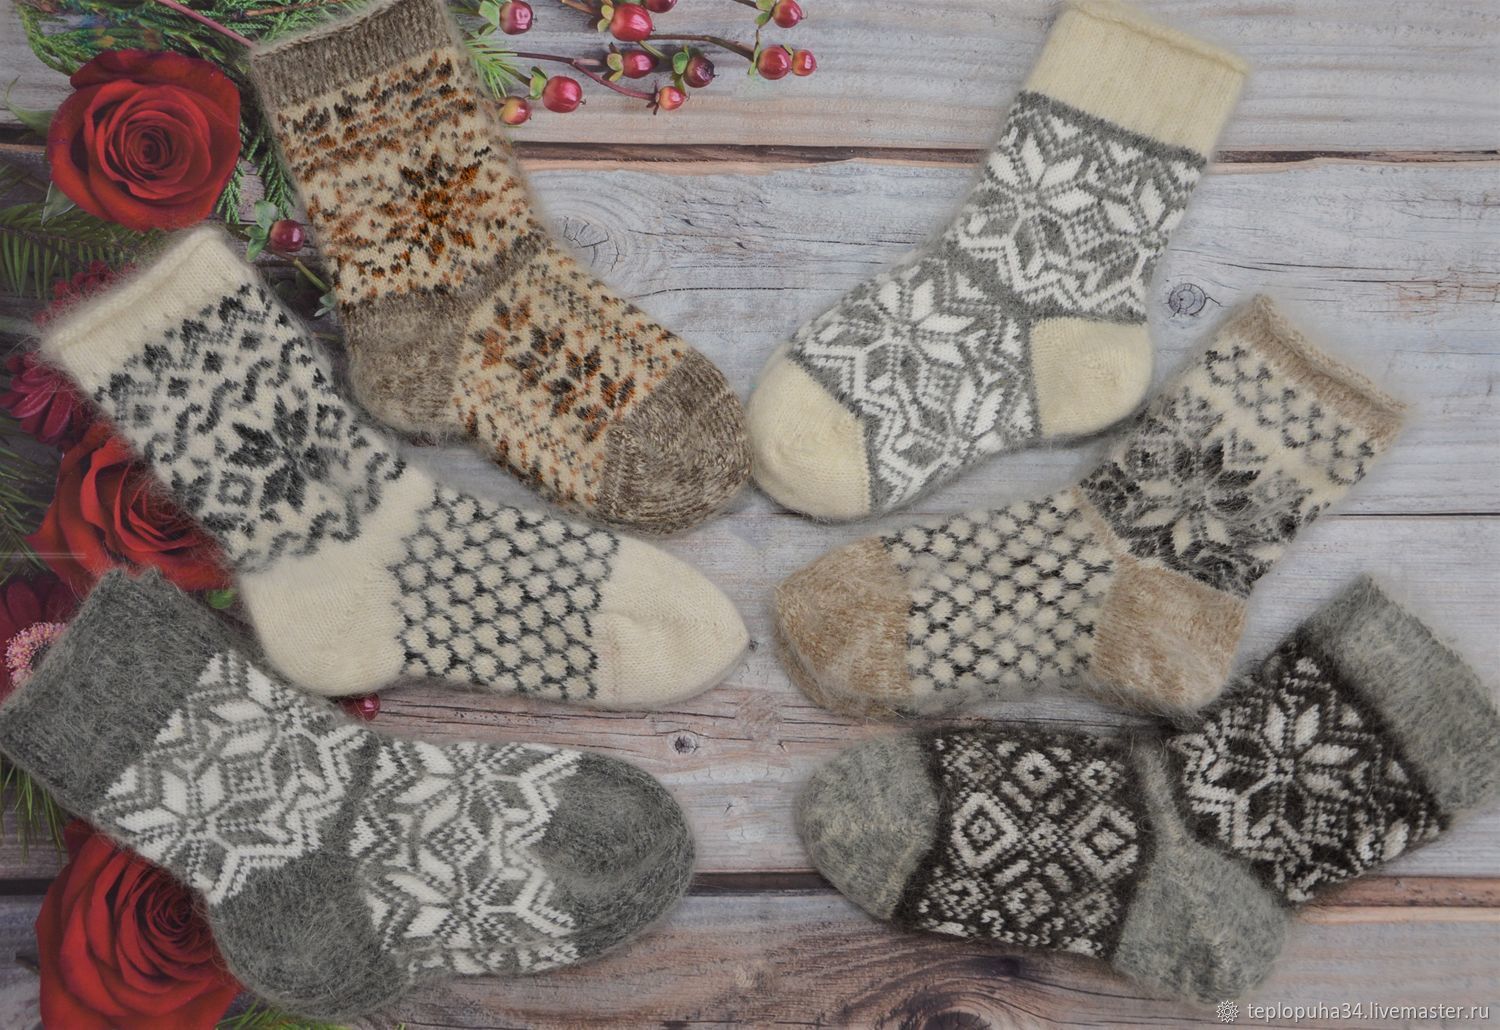 Socks down with ornament, Socks, Urjupinsk,  Фото №1